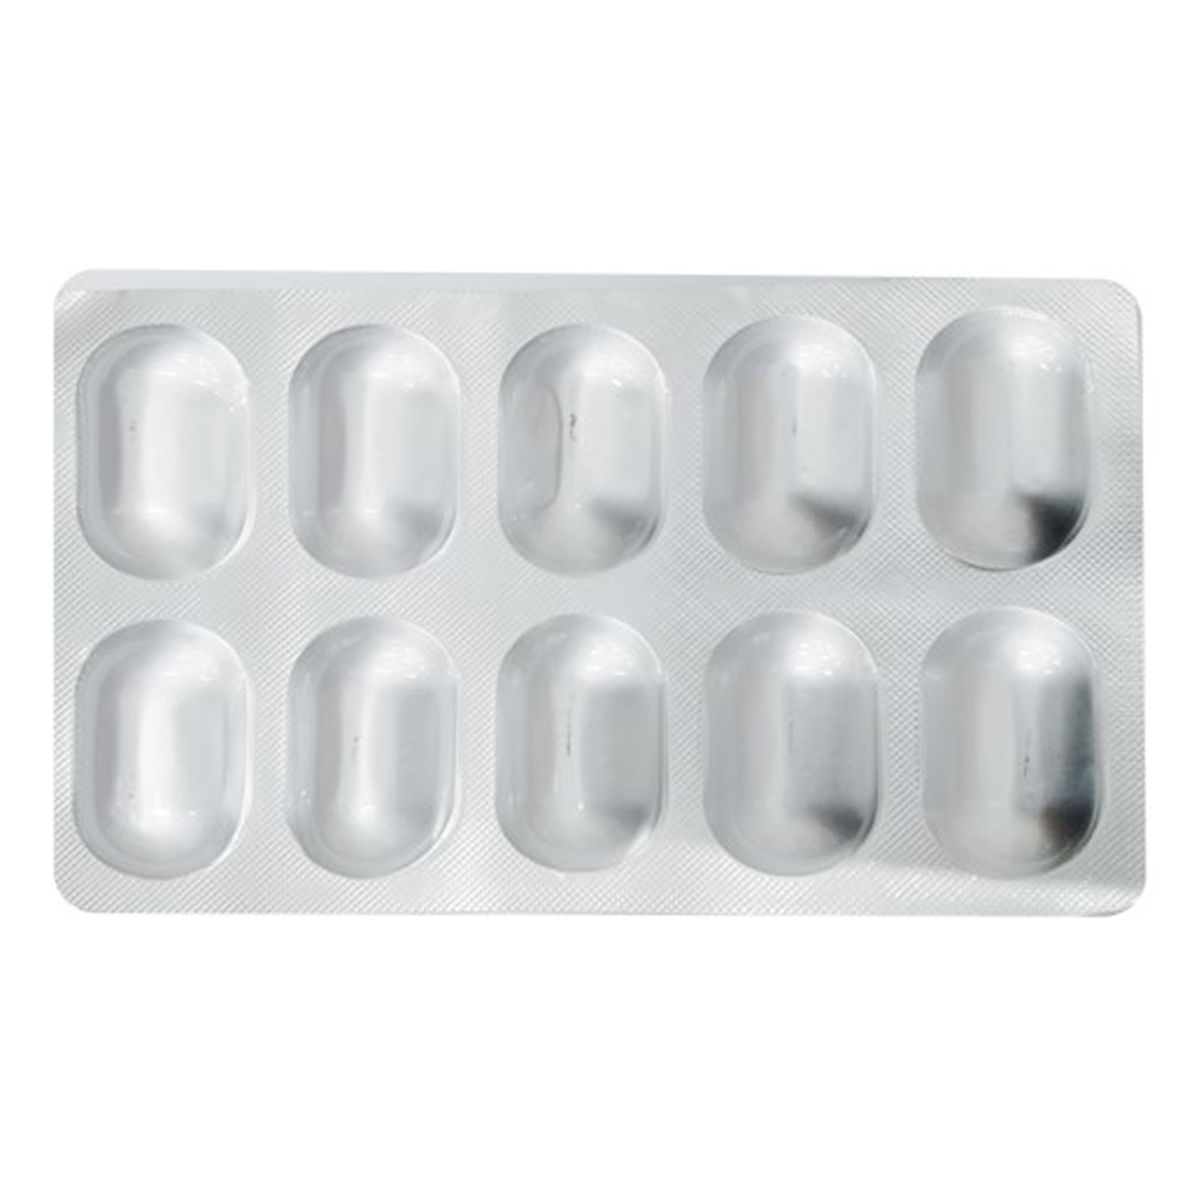 Zitran-100 mg Capsule 10's, Pack of 10 CapsuleS